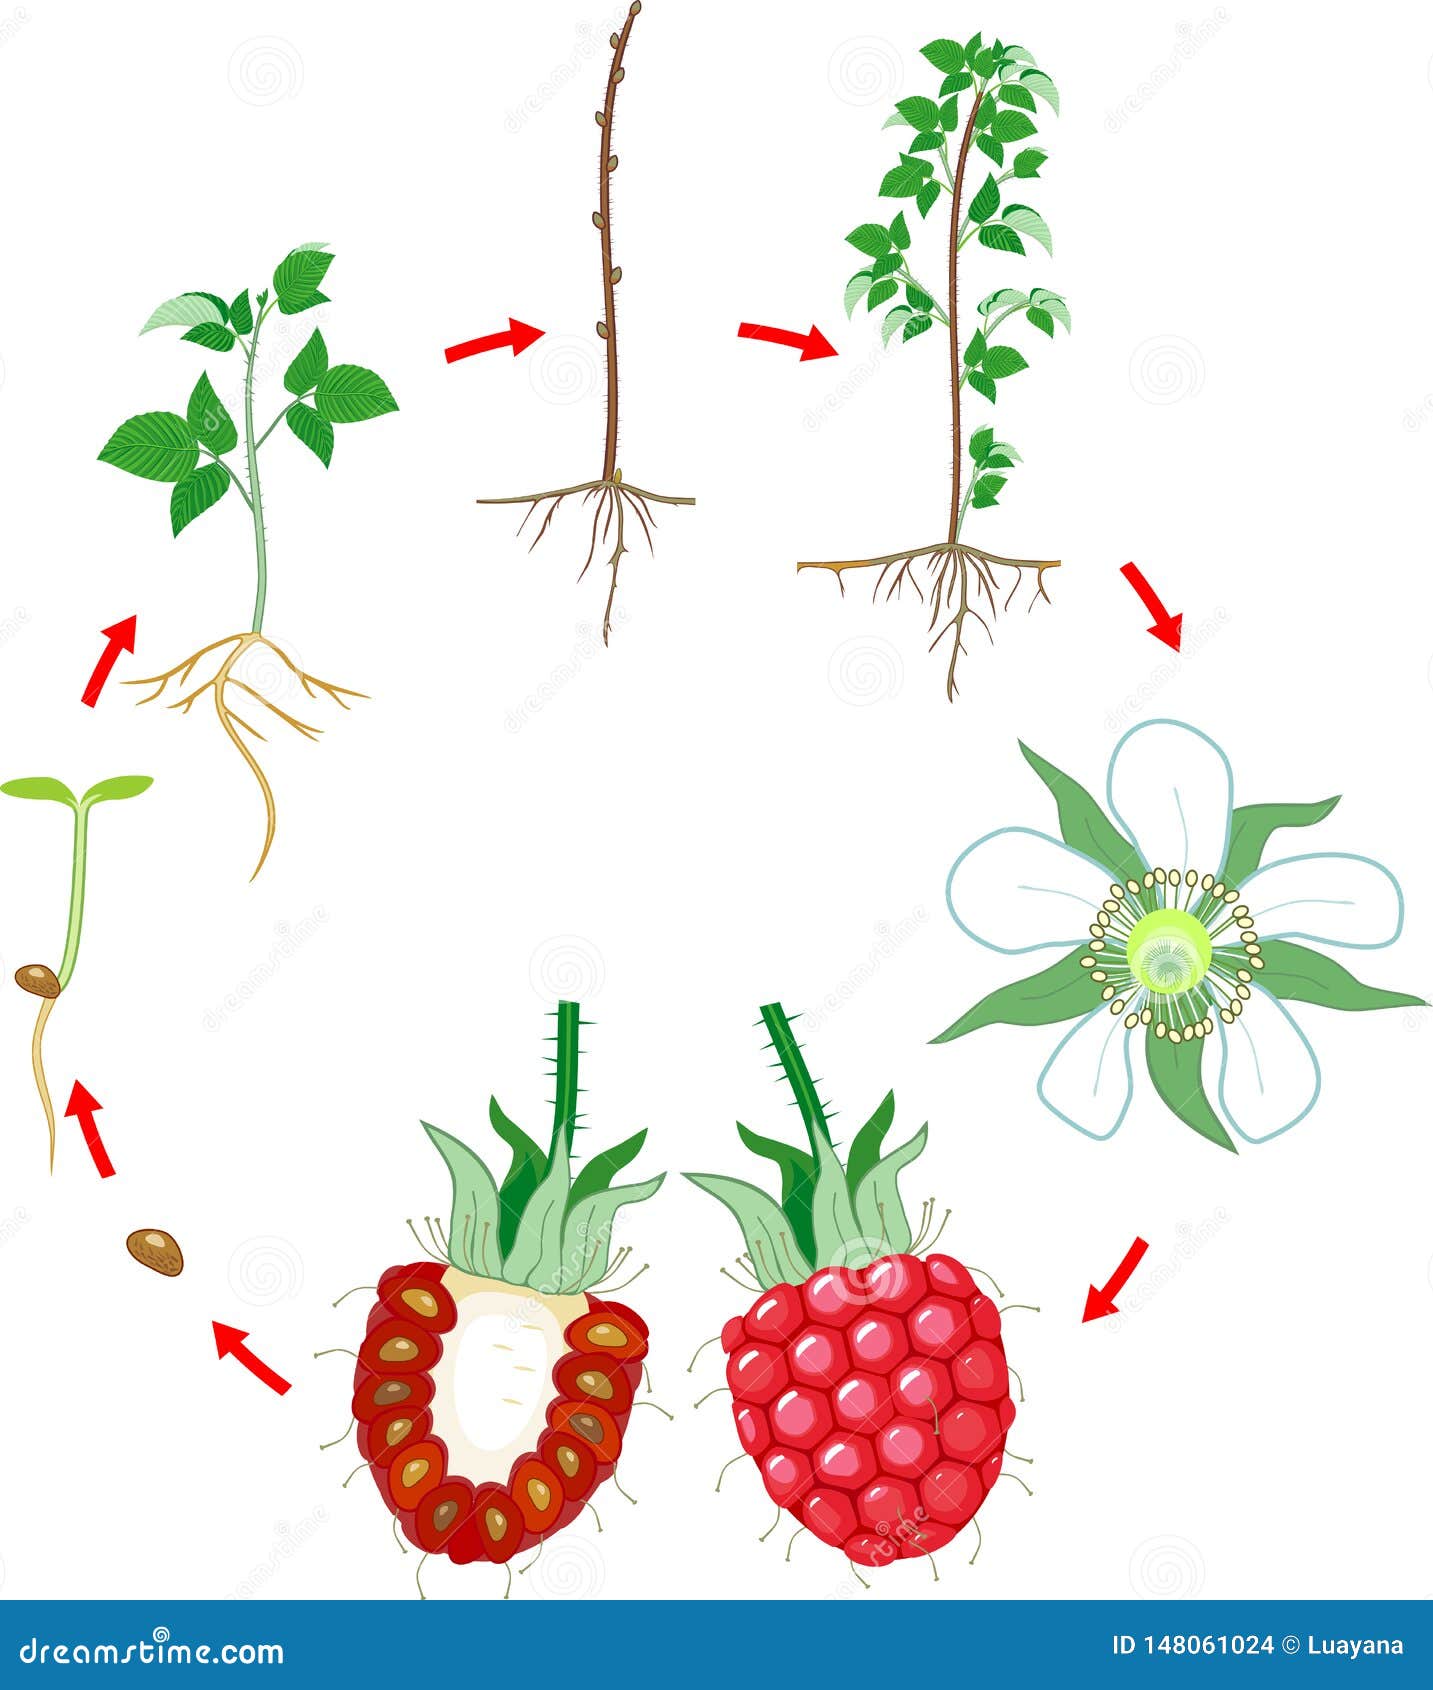 Жизненный цикл овощных растений по маркову. Этапы роста малины. Цикл роста малины. Этапы развития малины. Жизненный цикл малины обыкновенной.